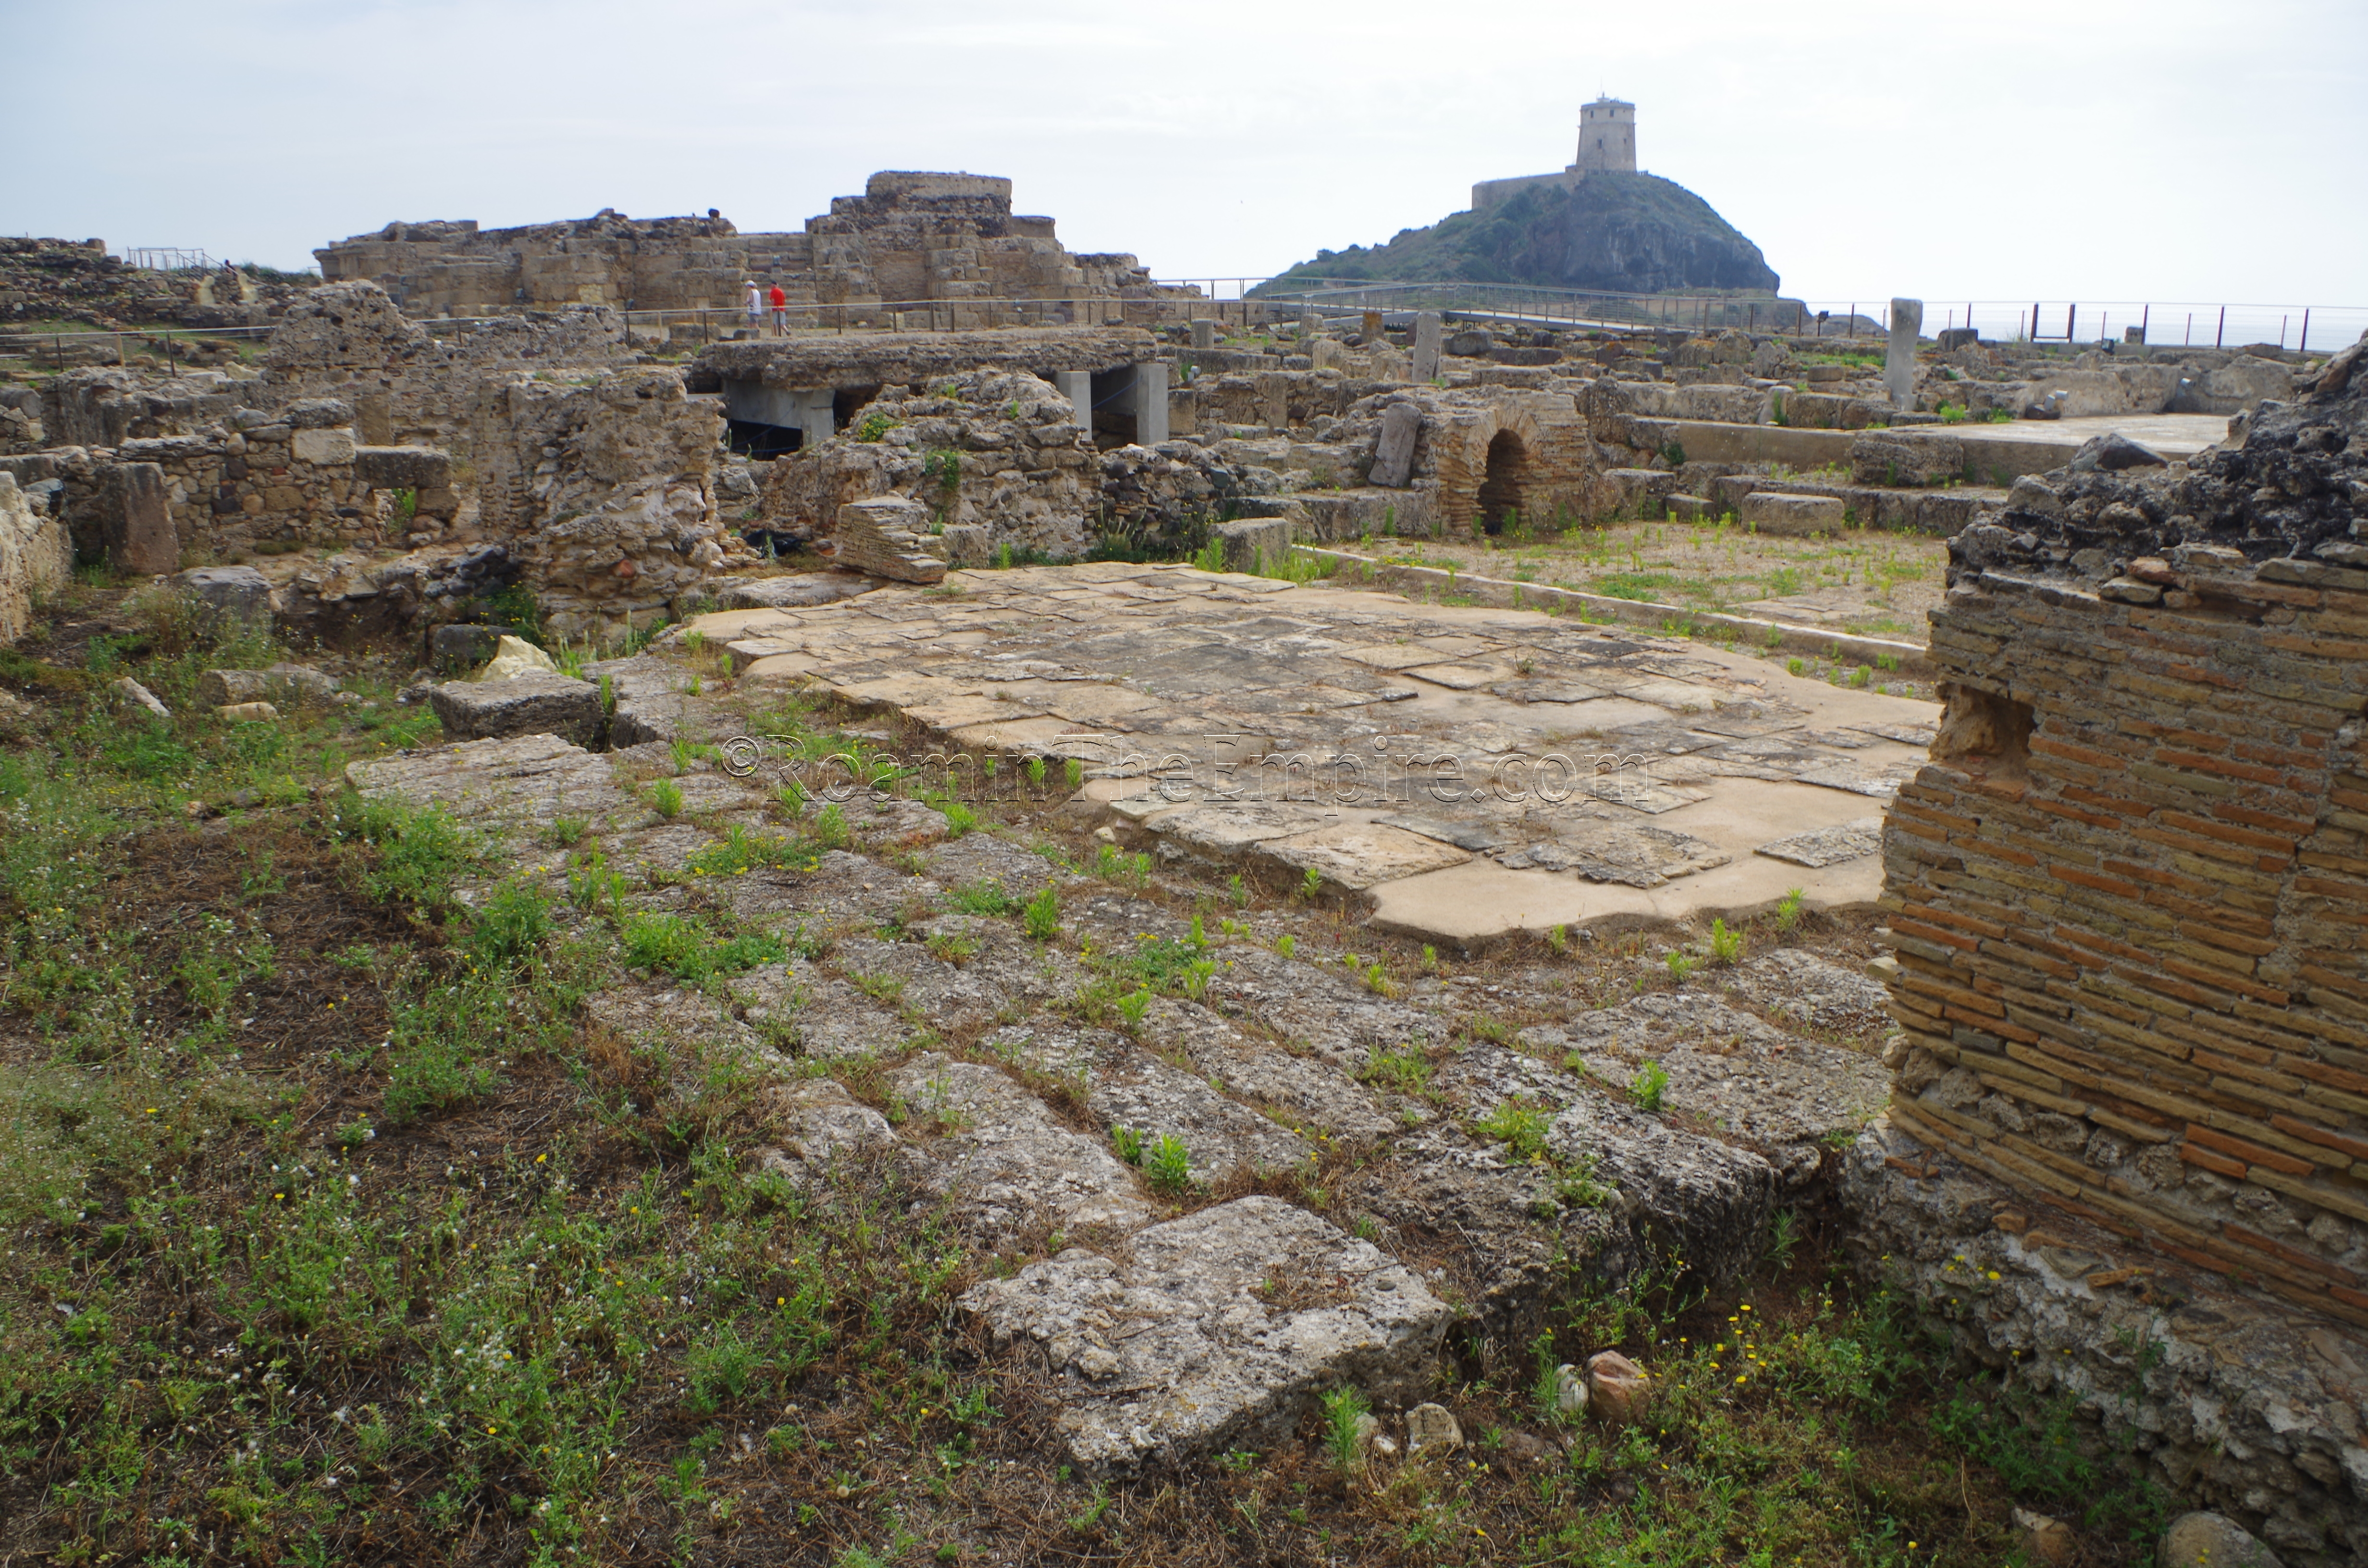 Caldarium of the Terme Centrali.